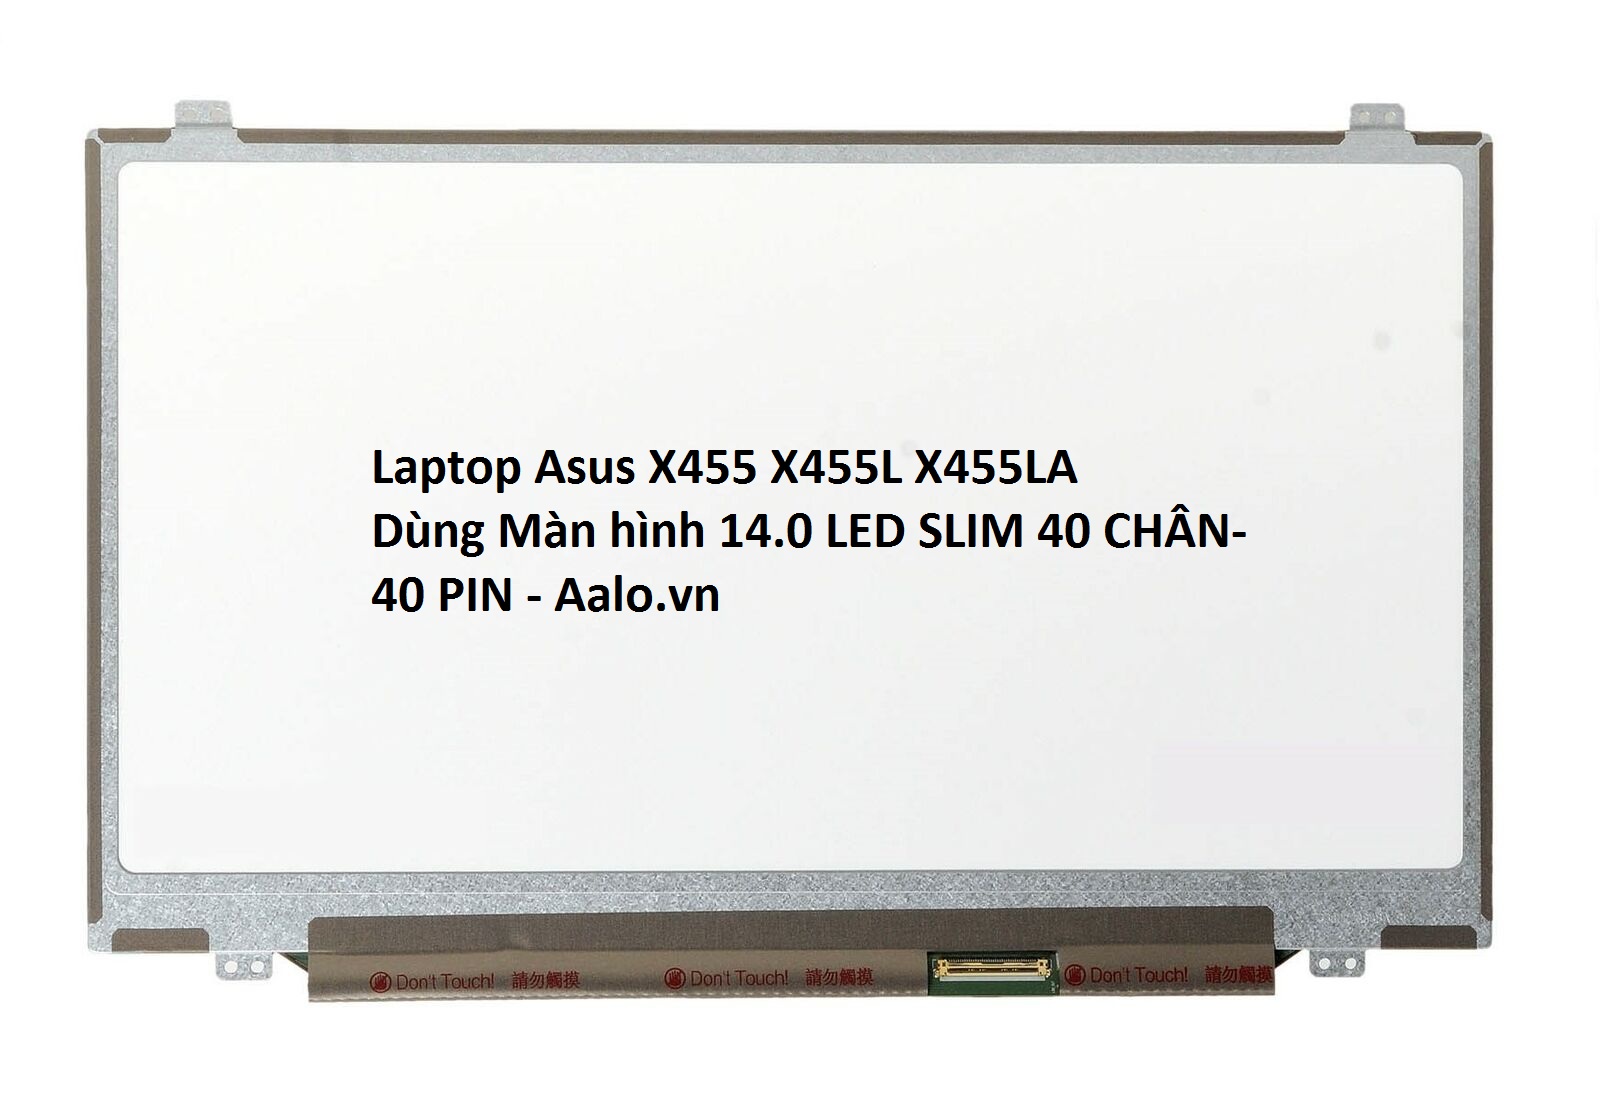 Màn hình laptop Asus X455 X455L X455LA - Aalo.vn